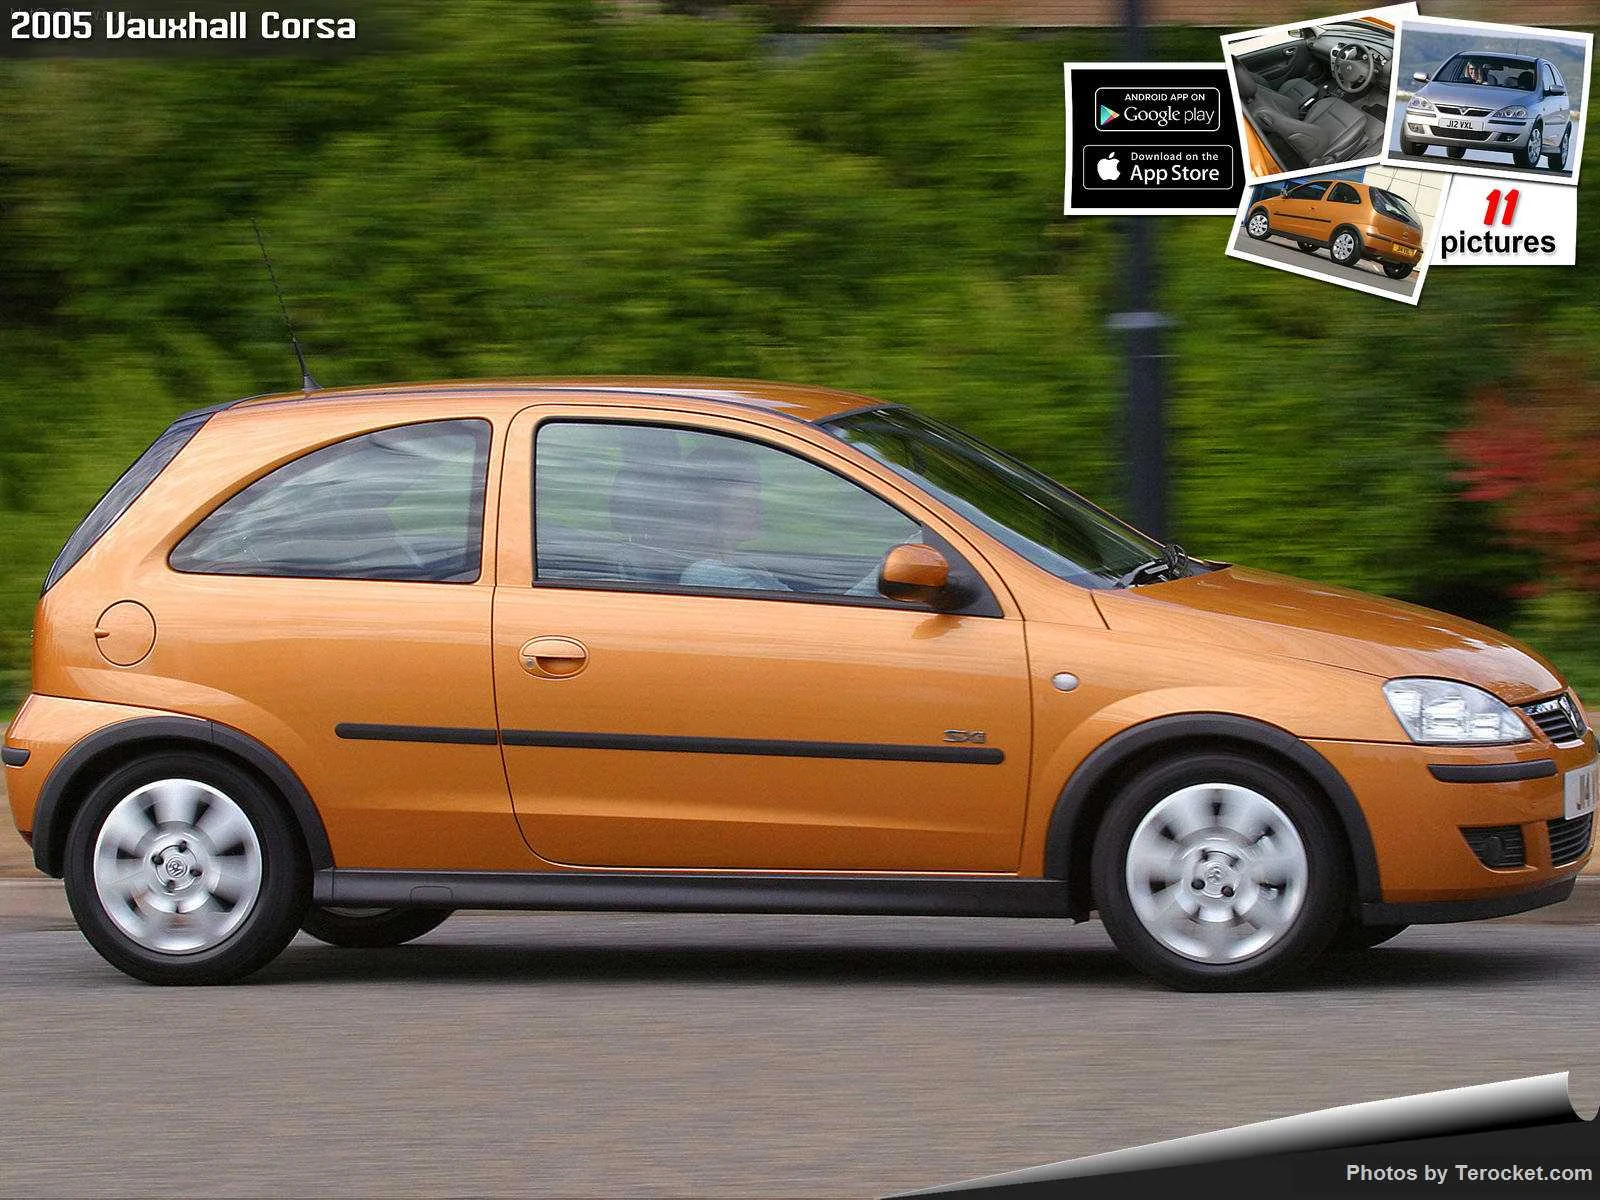 Hình ảnh xe ô tô Vauxhall Corsa 2005 & nội ngoại thất